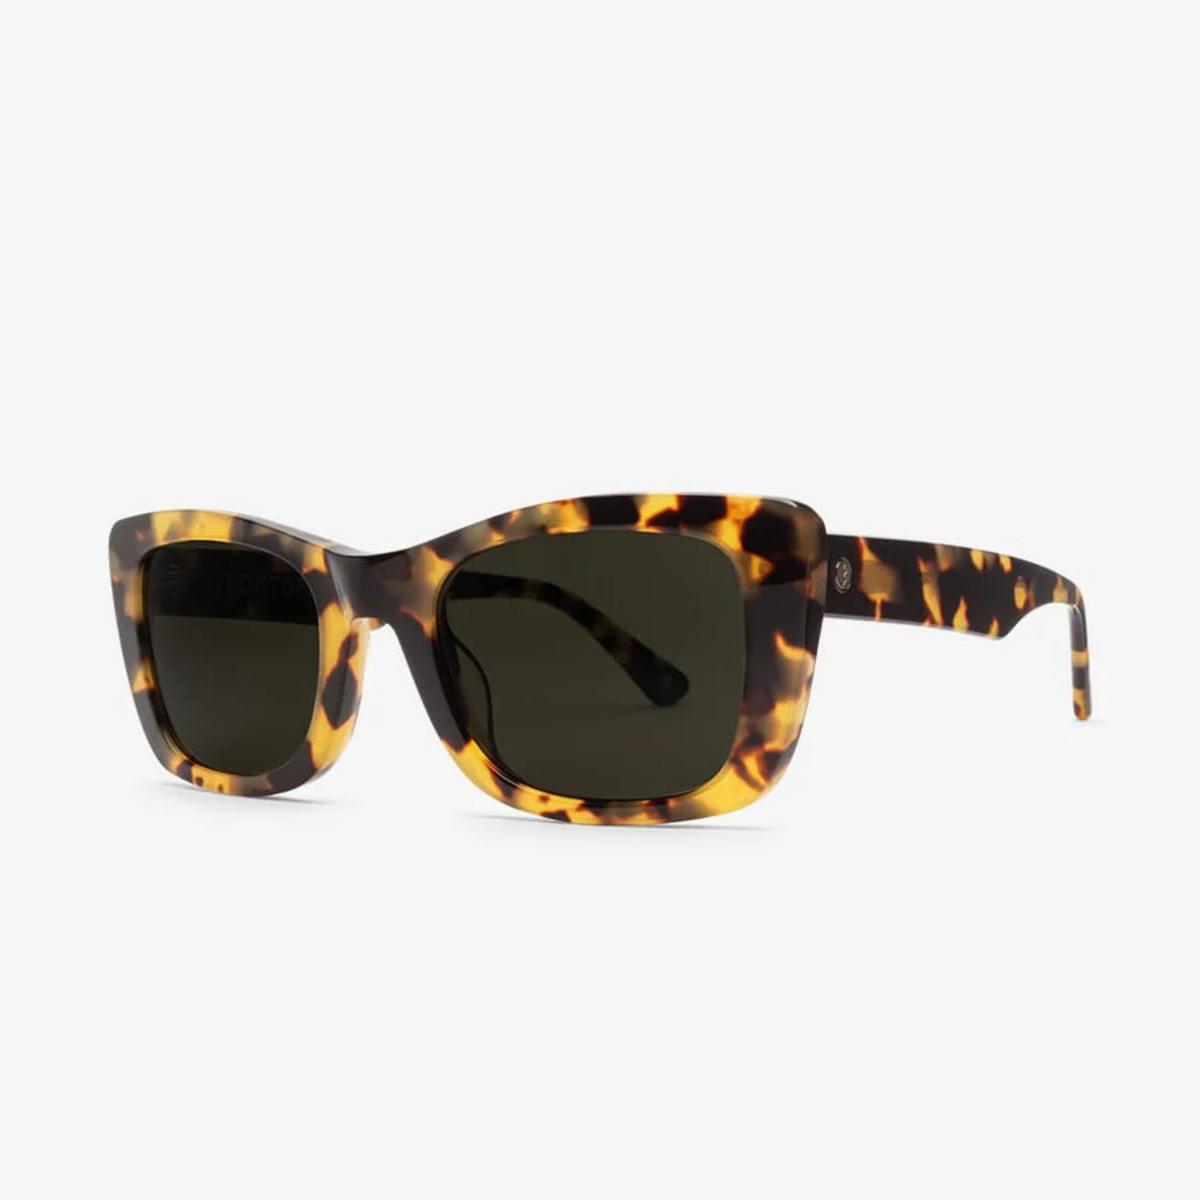 Electric Portofino Sunglasses